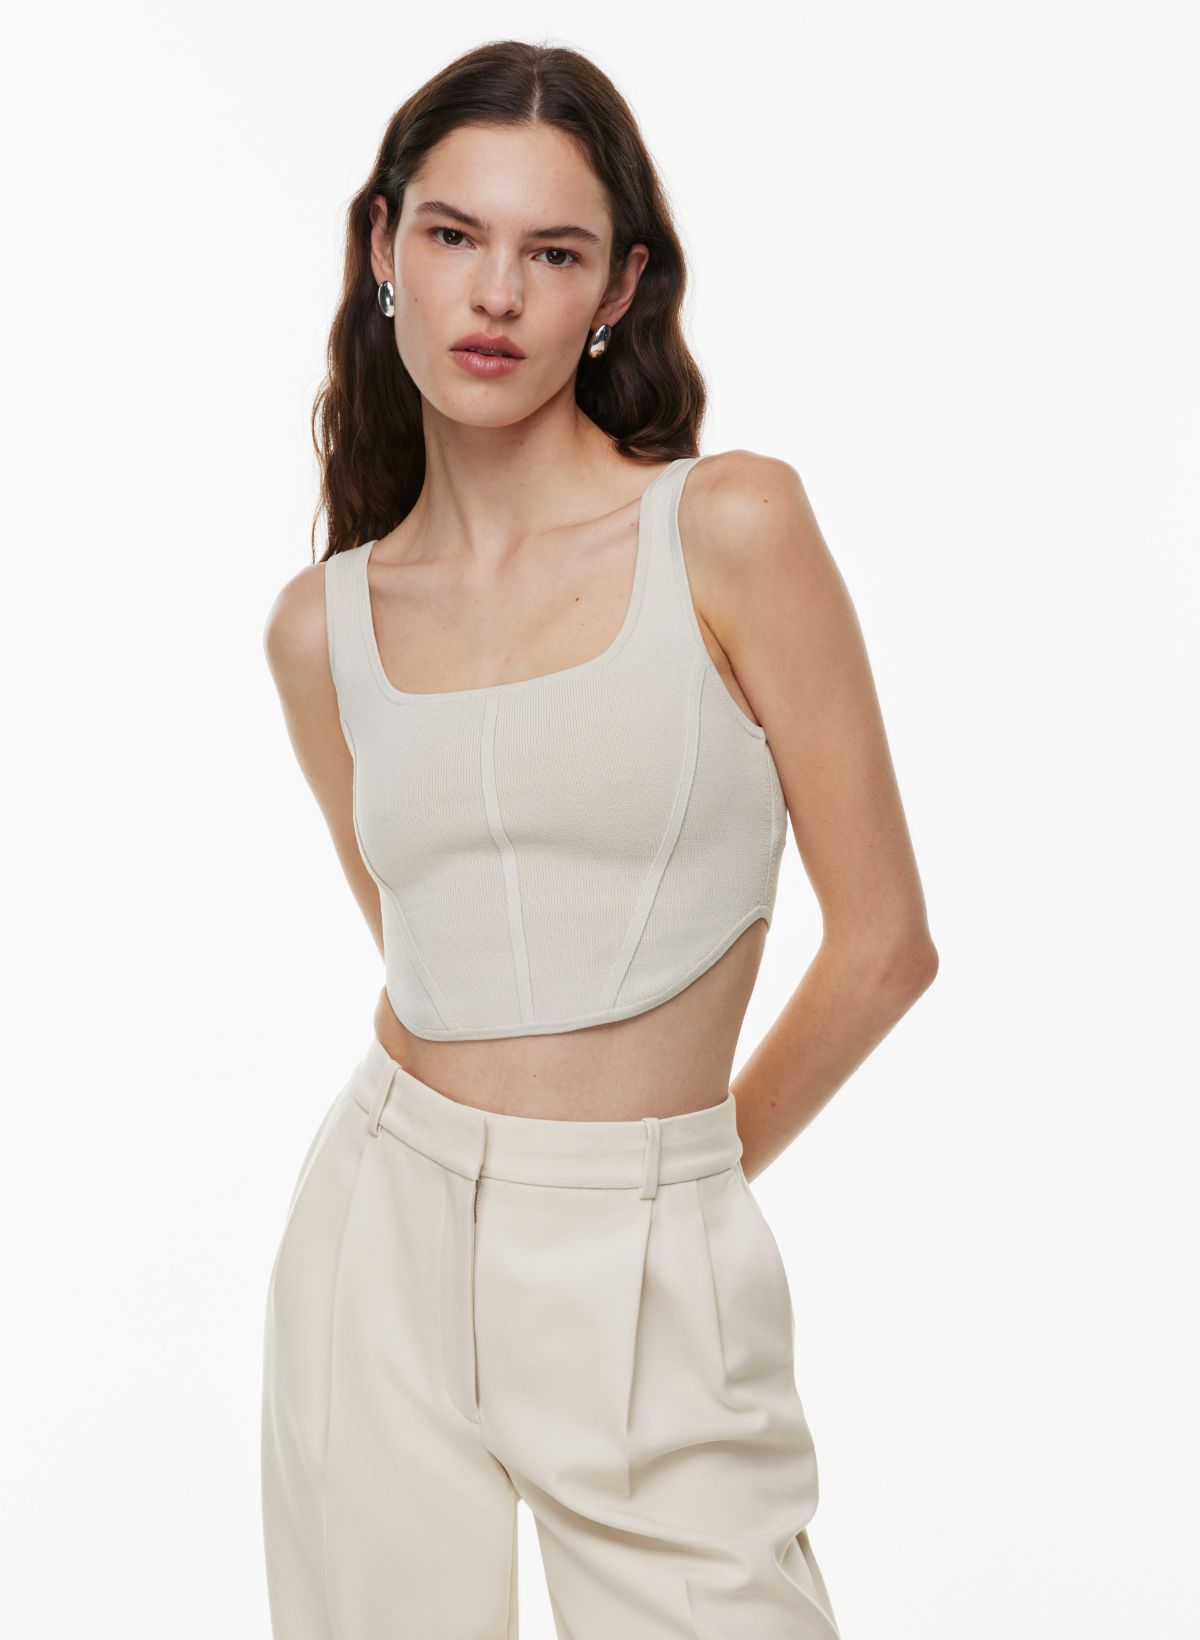 Women's Transparent Bra Bustier Zipped Short Top T-Shirt Large Size